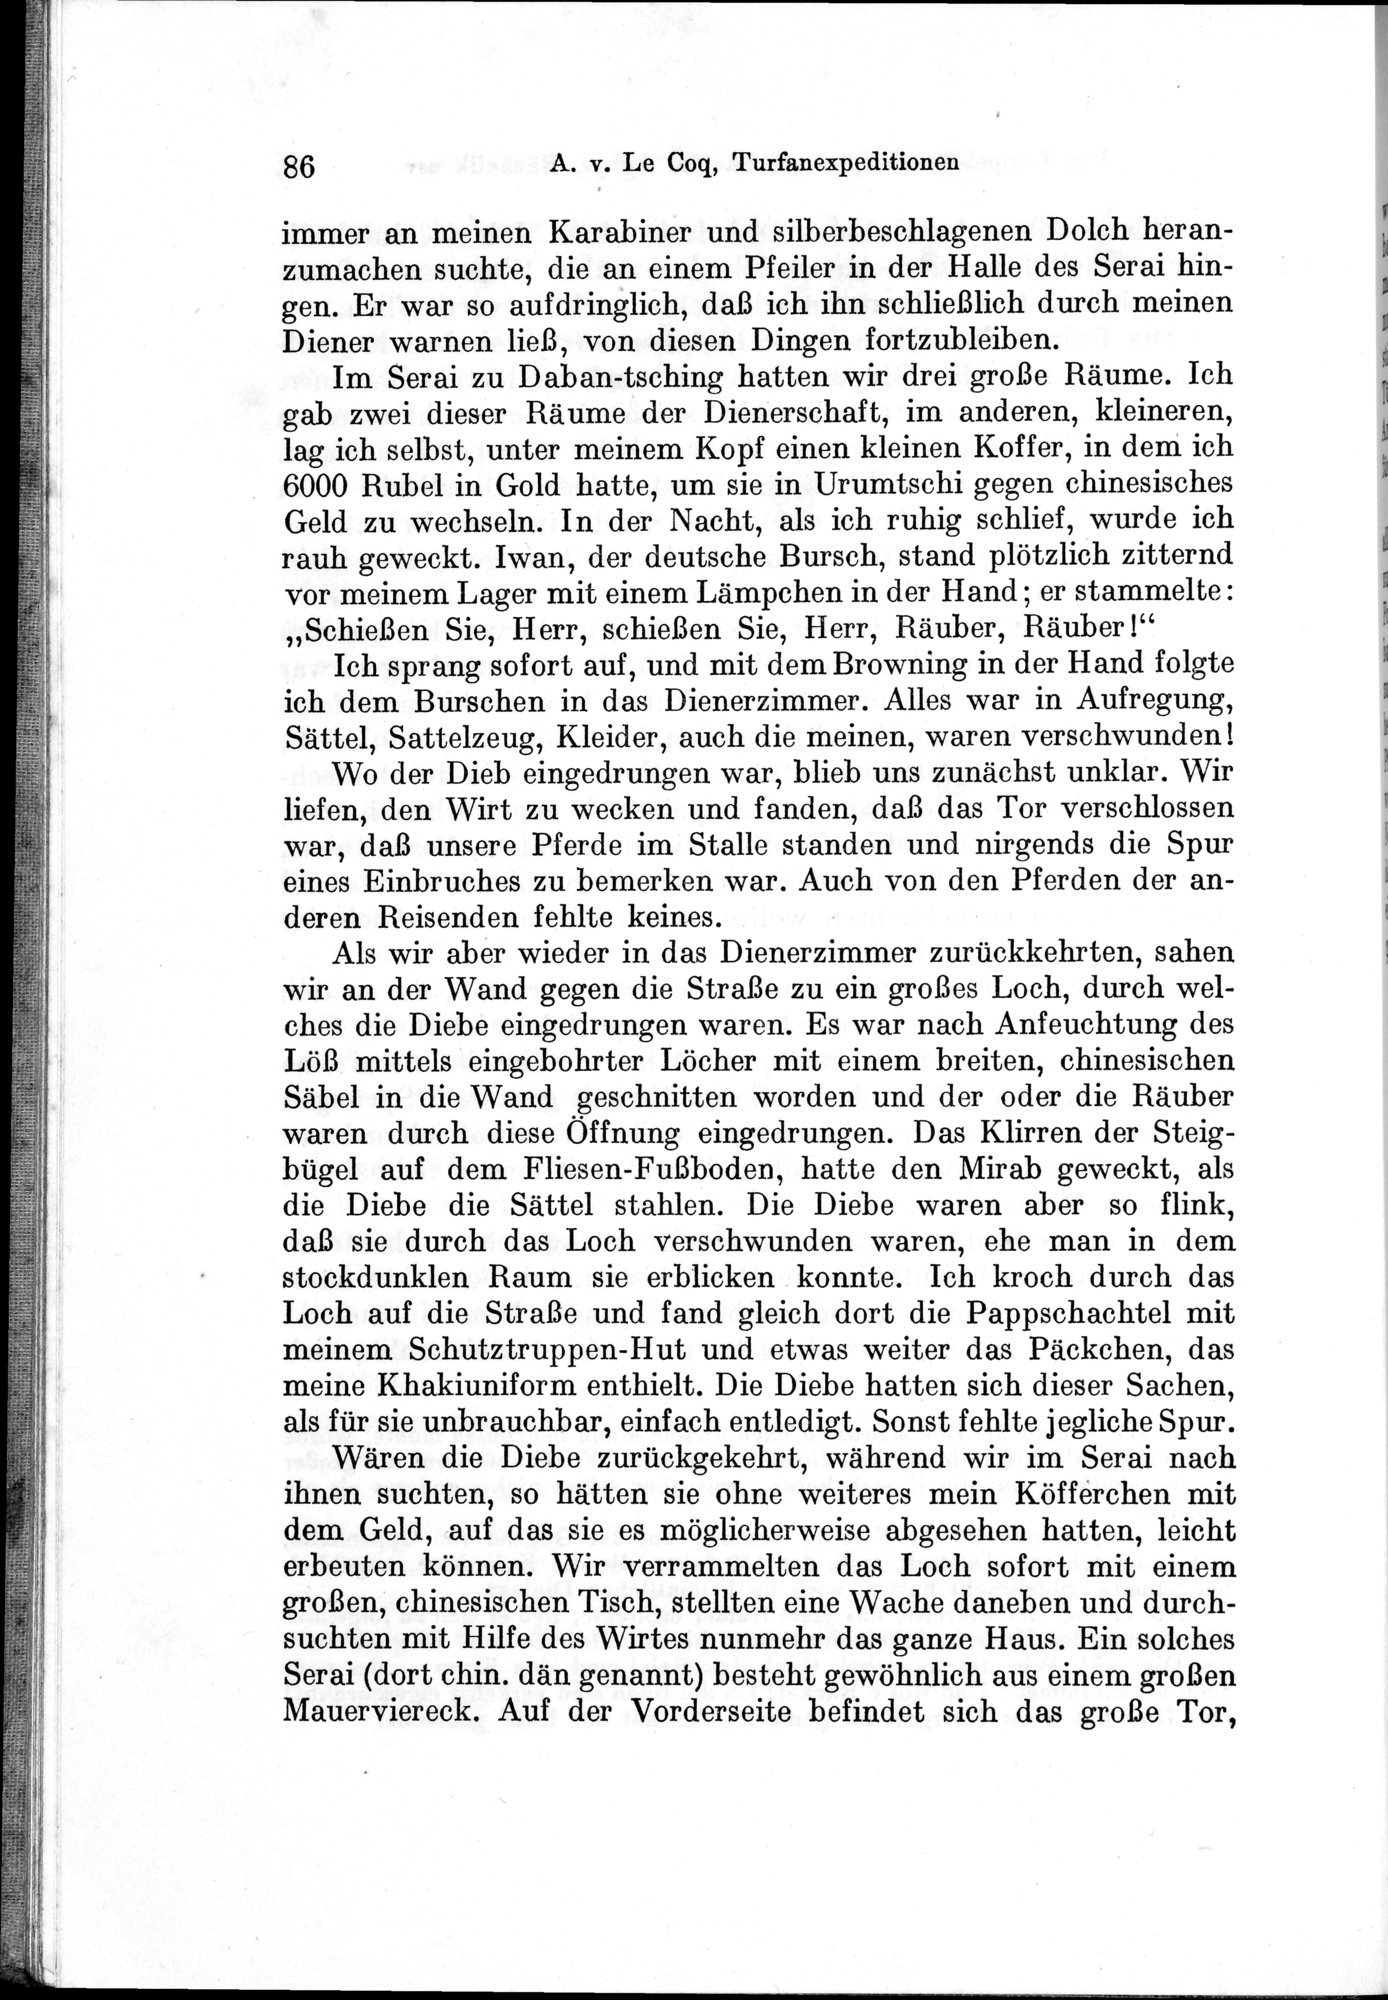 Auf Hellas Spuren in Ostturkistan : vol.1 / Page 126 (Grayscale High Resolution Image)